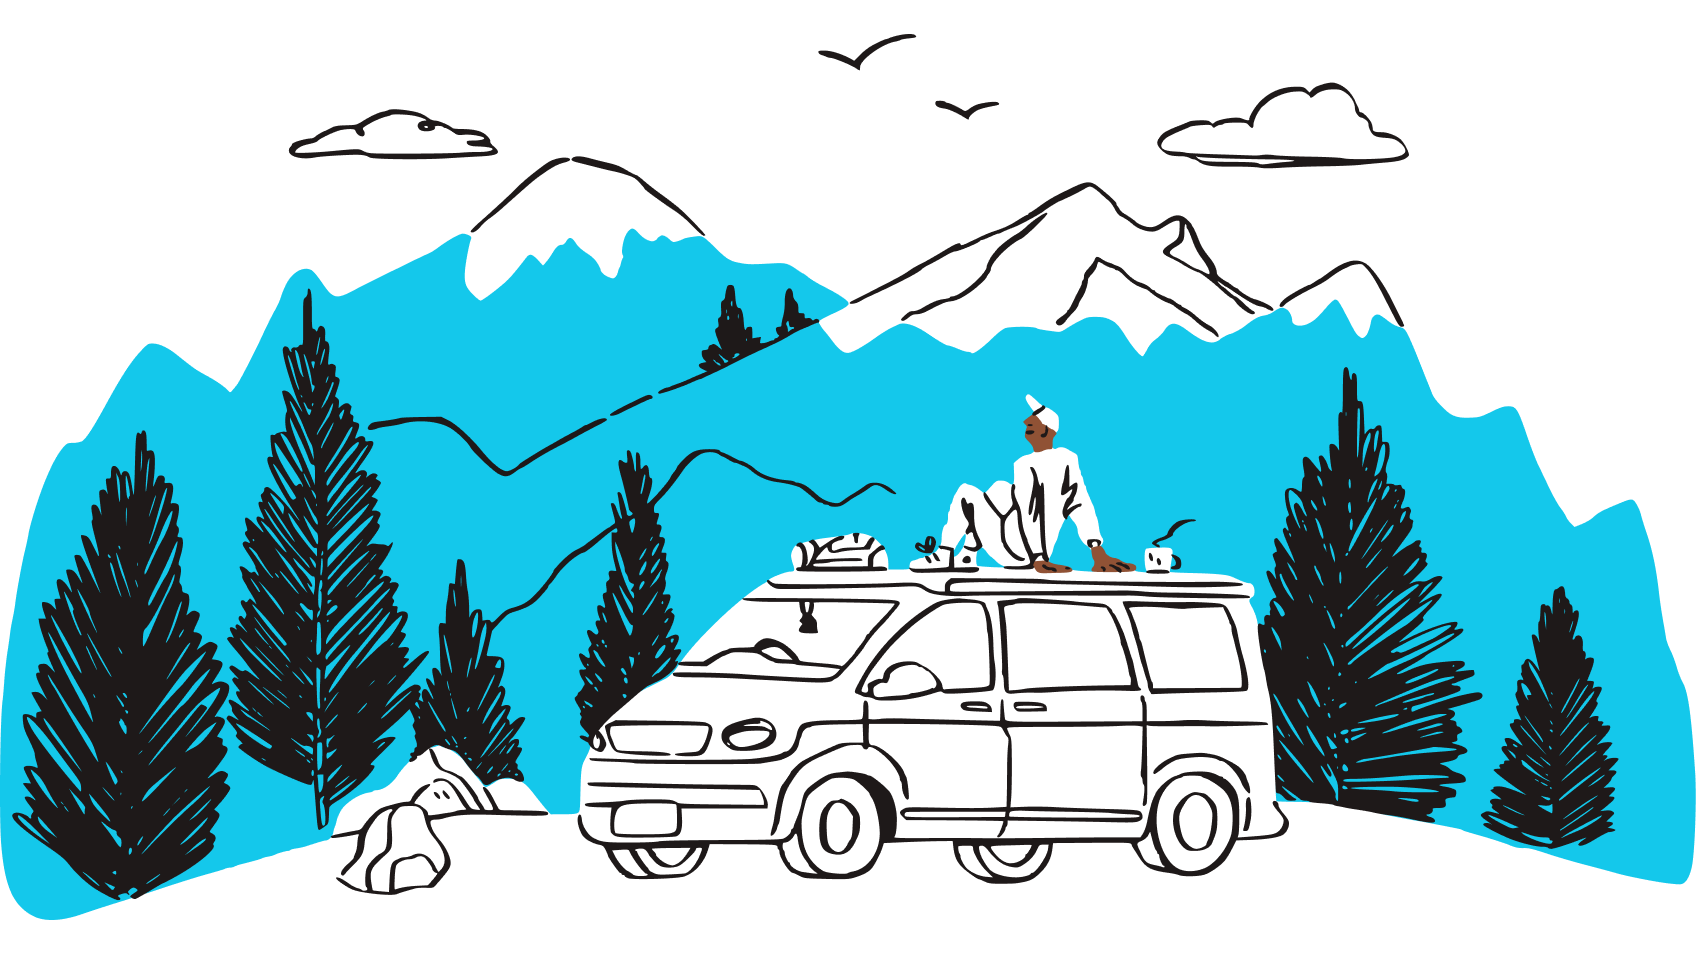 車の屋根に座り、山並みの風景を眺めている人物のイラスト。